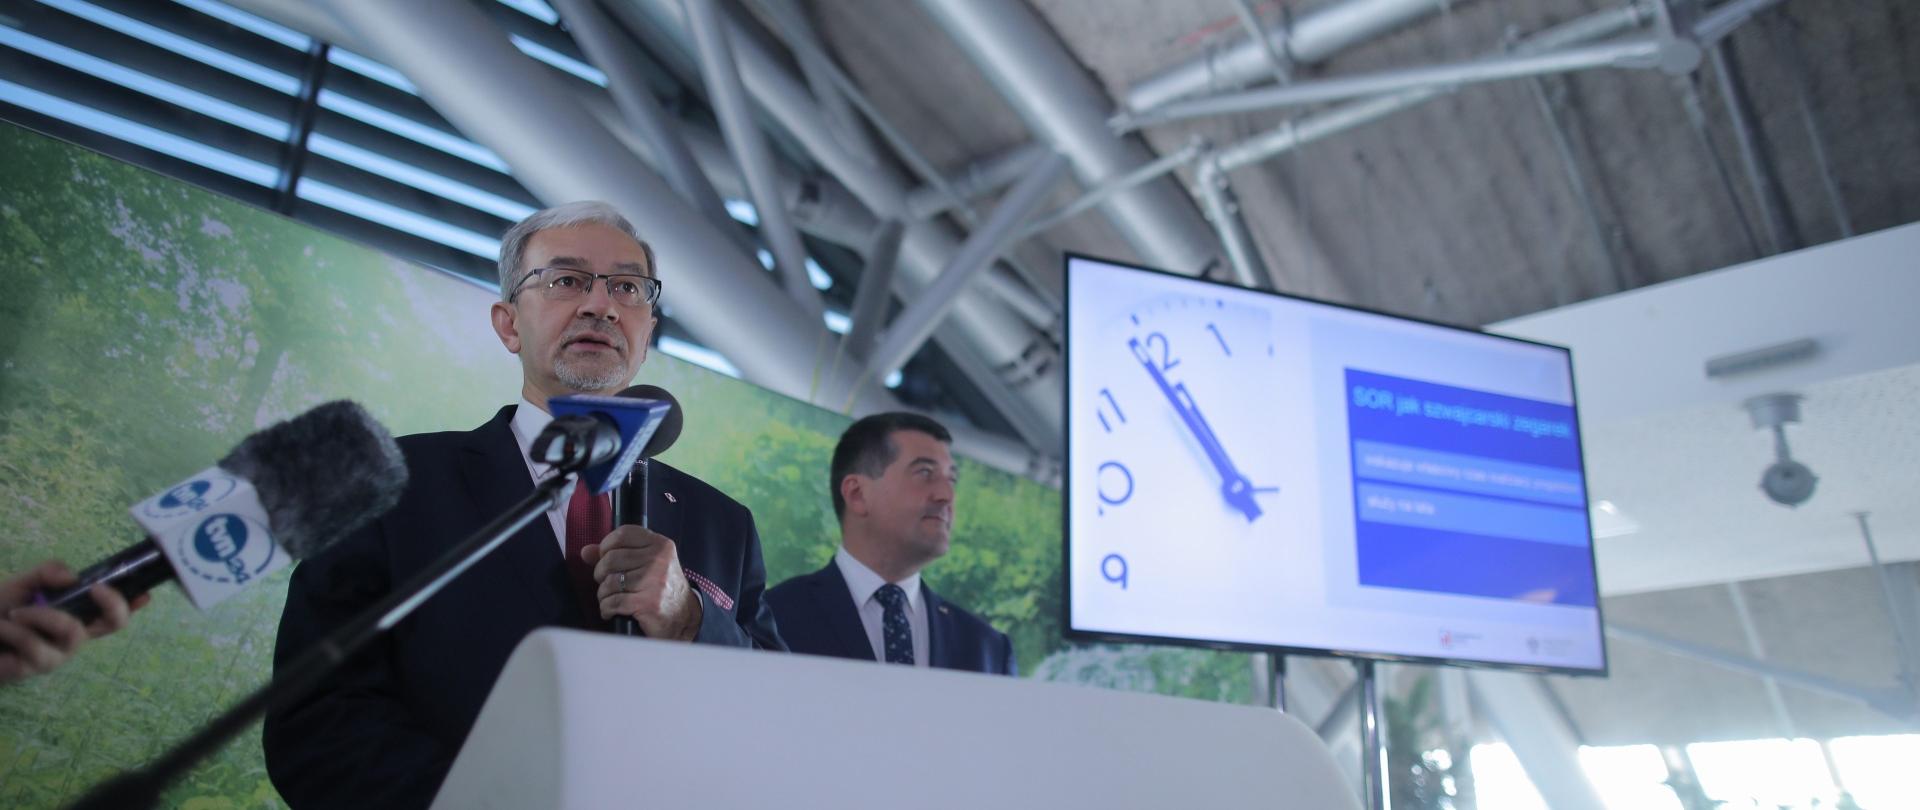 Minister Kwieciński stoi przy mównicy, przed nim znajdują się mikrofony dziennikarskie, za nim wyświetlana jest grafika z napisem "SOR jak szwajcarski zegarek", na grafice jest zdjęcie zegara. 